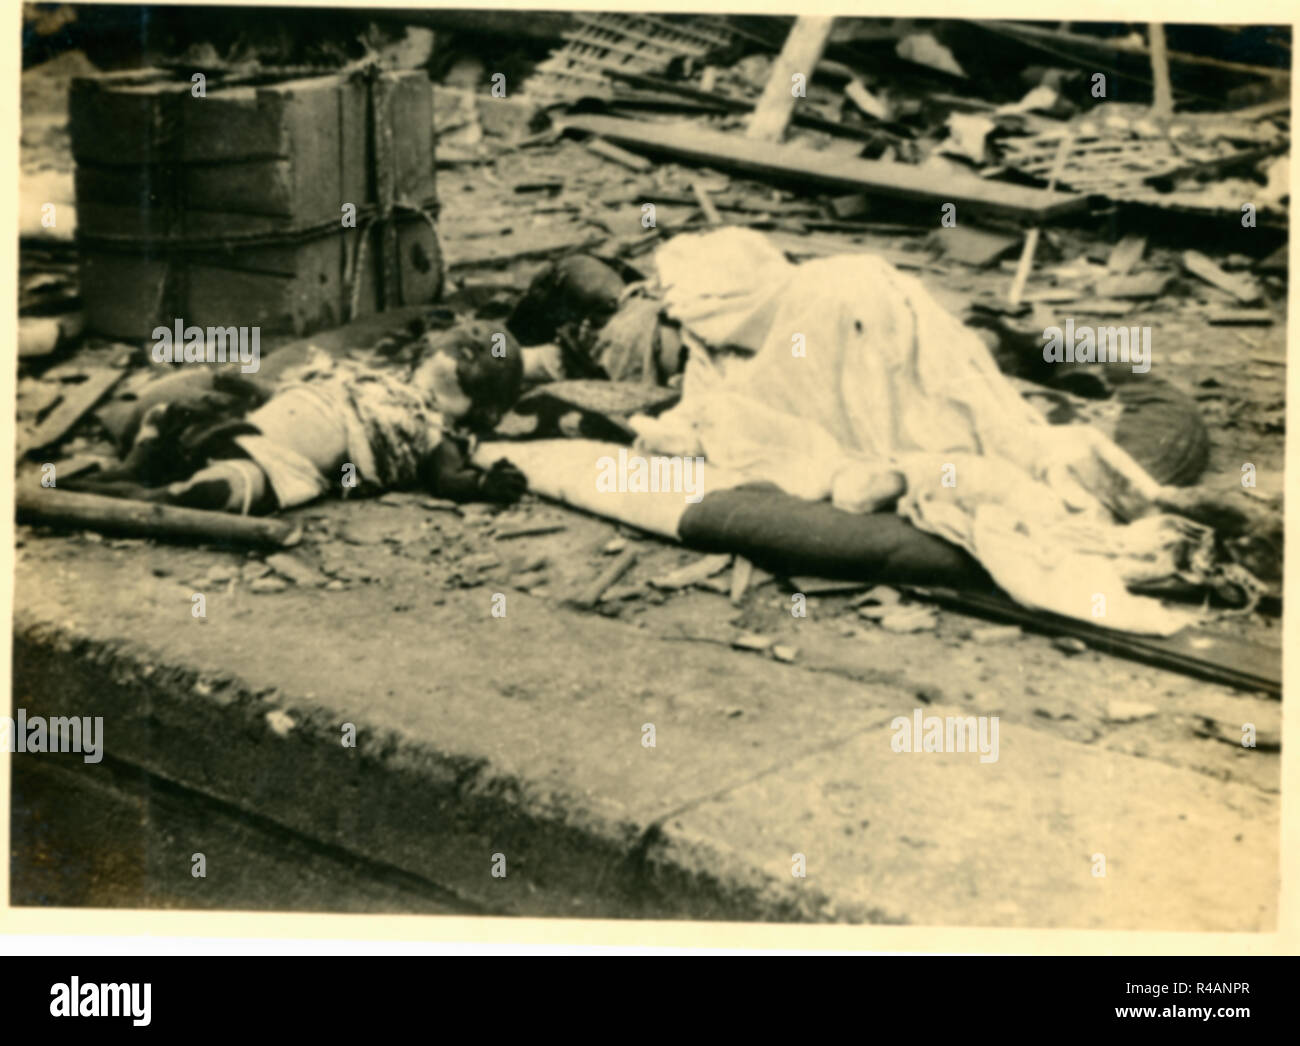 Cadavres cadavres des victimes des bombardements atomiques en ruines dévastées wasteland, Hiroshima, Japon, 1945 Banque D'Images